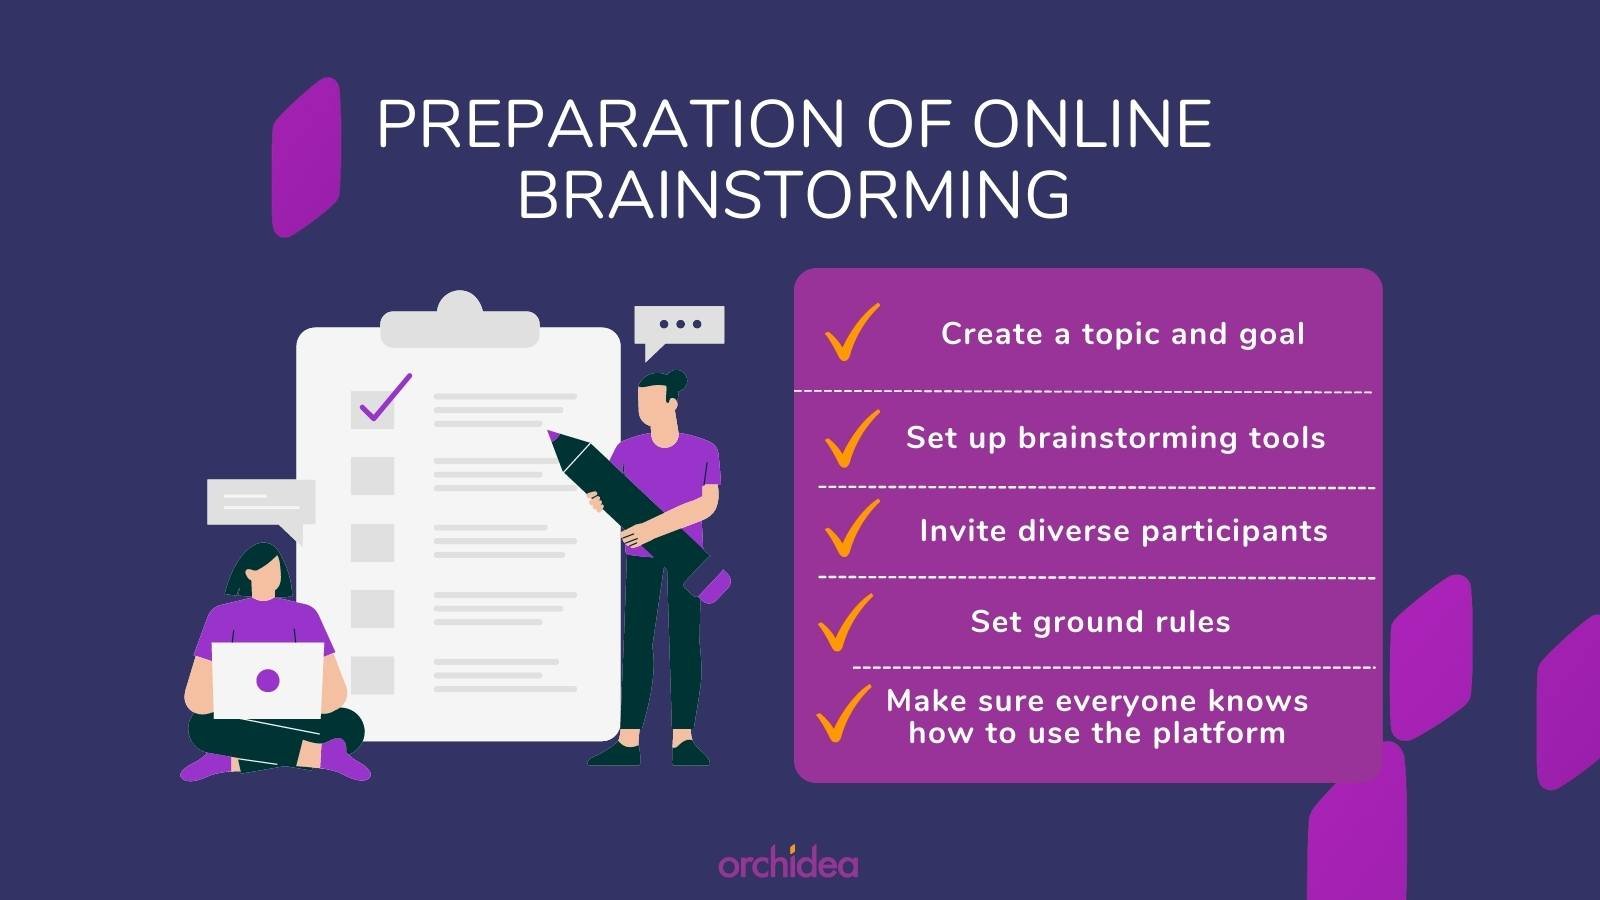 steps of preparing online brainstorming